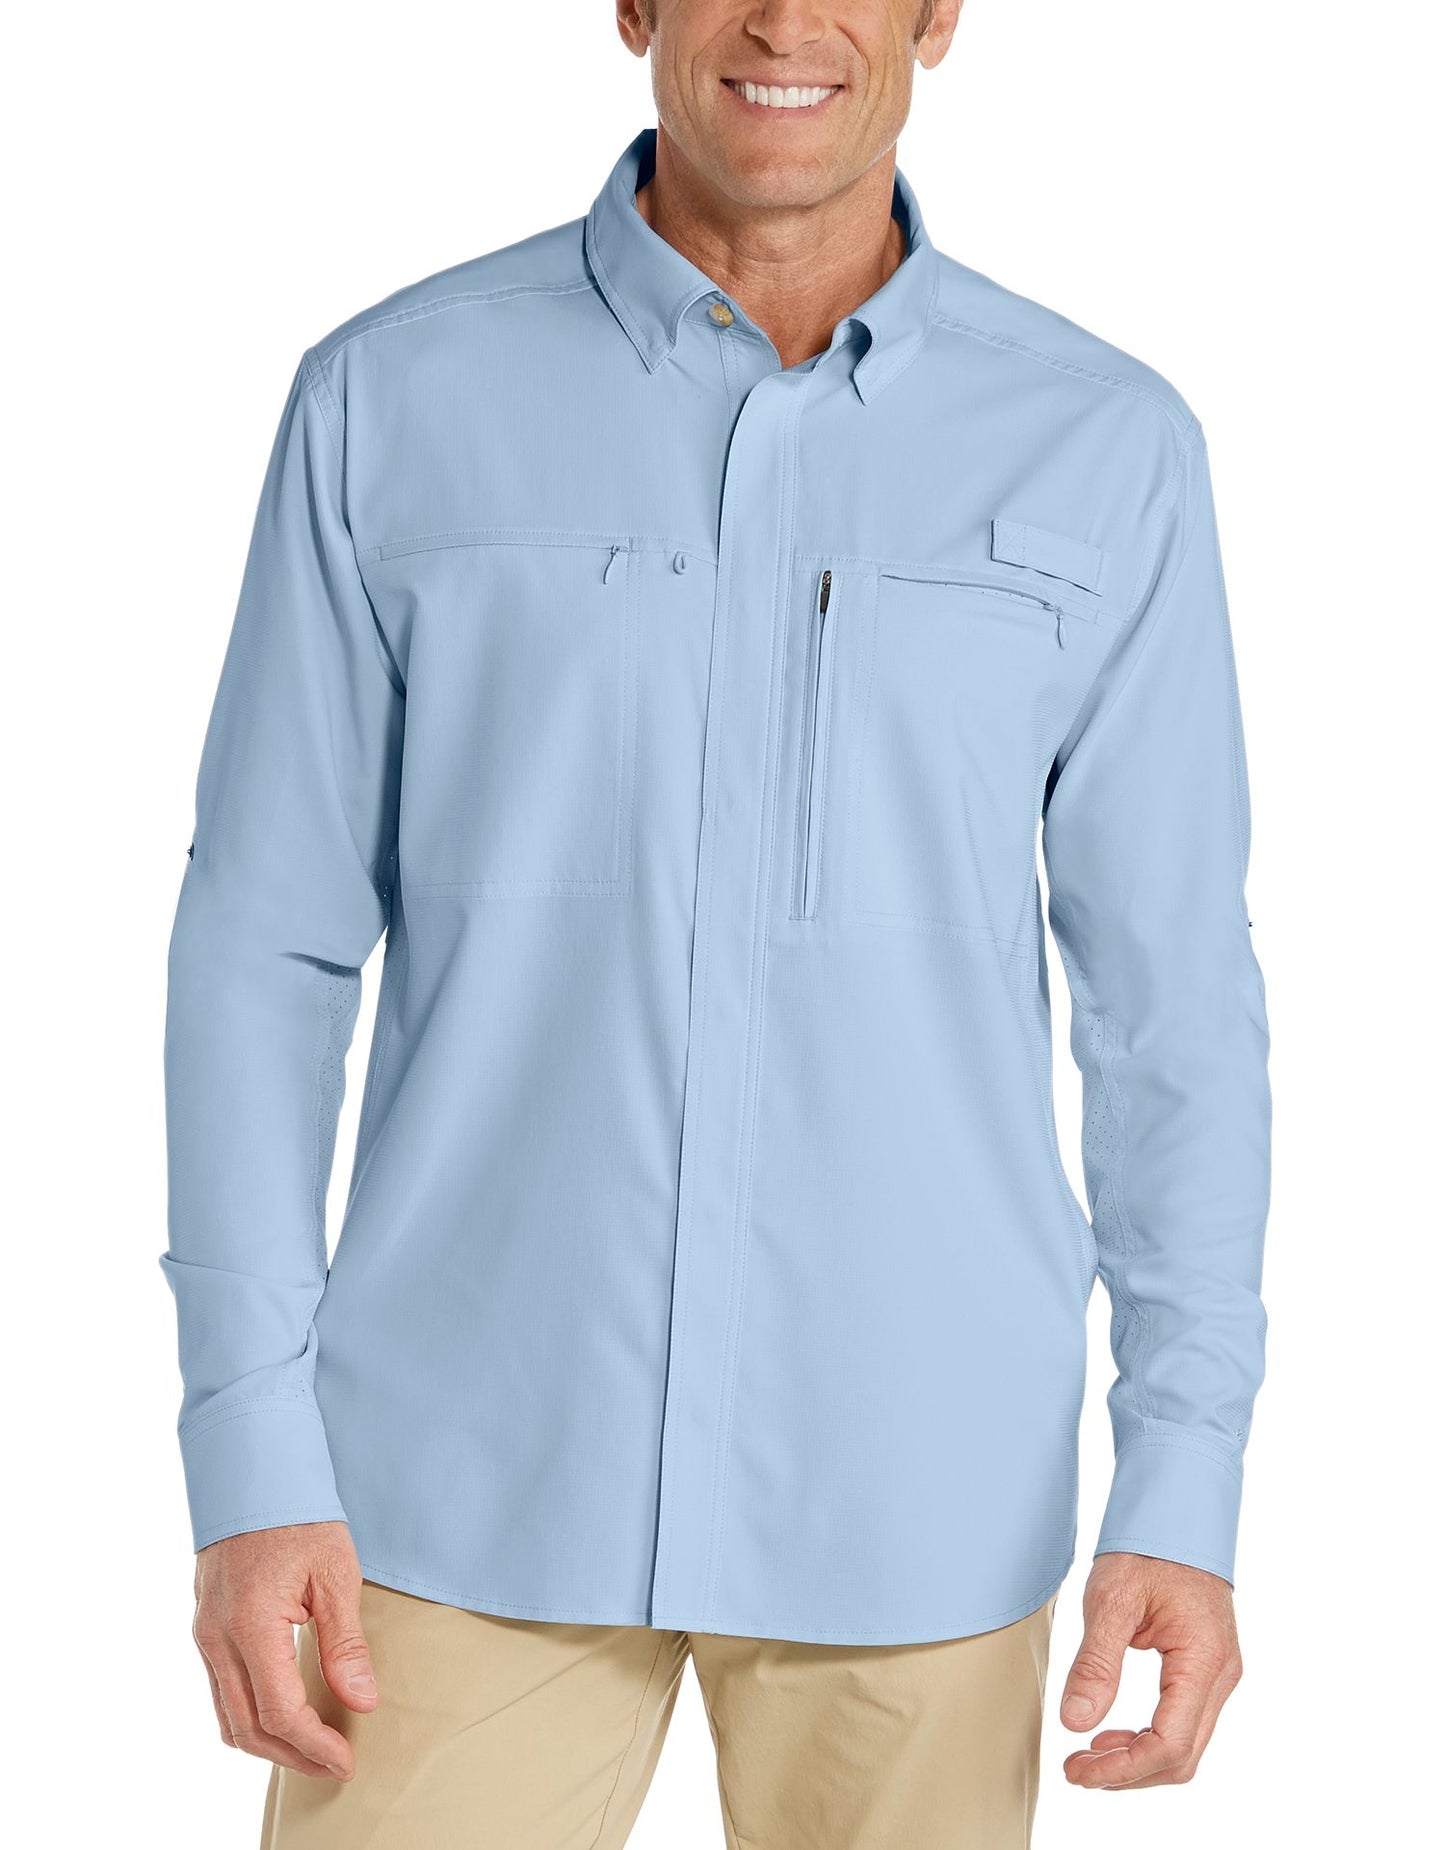 Coolibar - UV Overhemd voor heren - Baraco - Lichtblauw